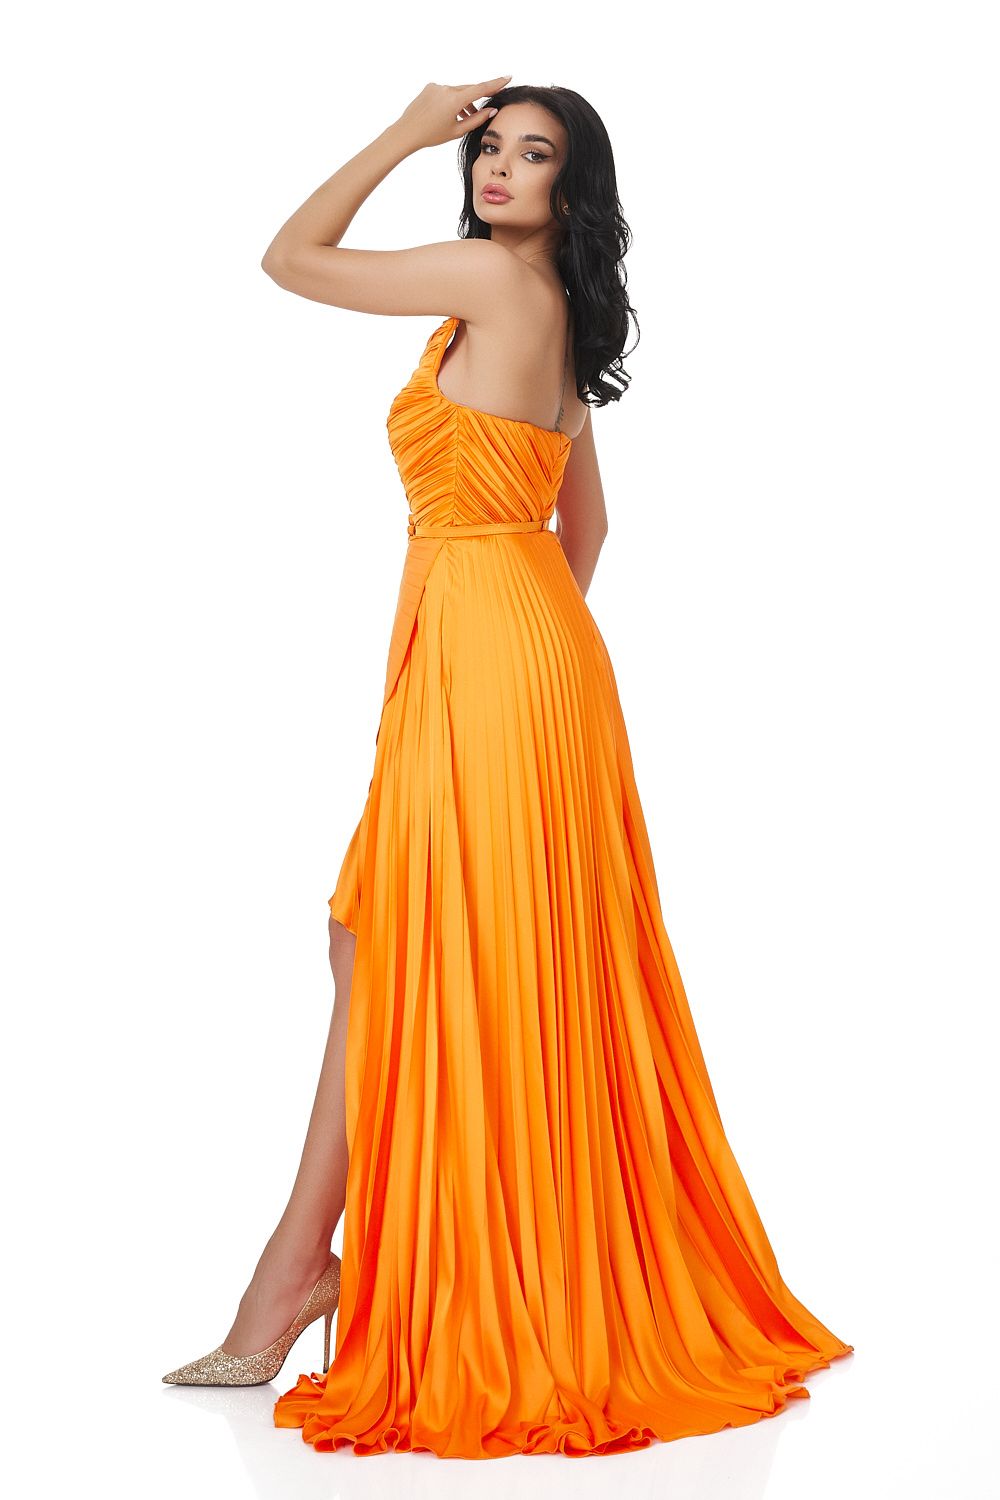 Miek Bogas hosszú narancssárga női ruha